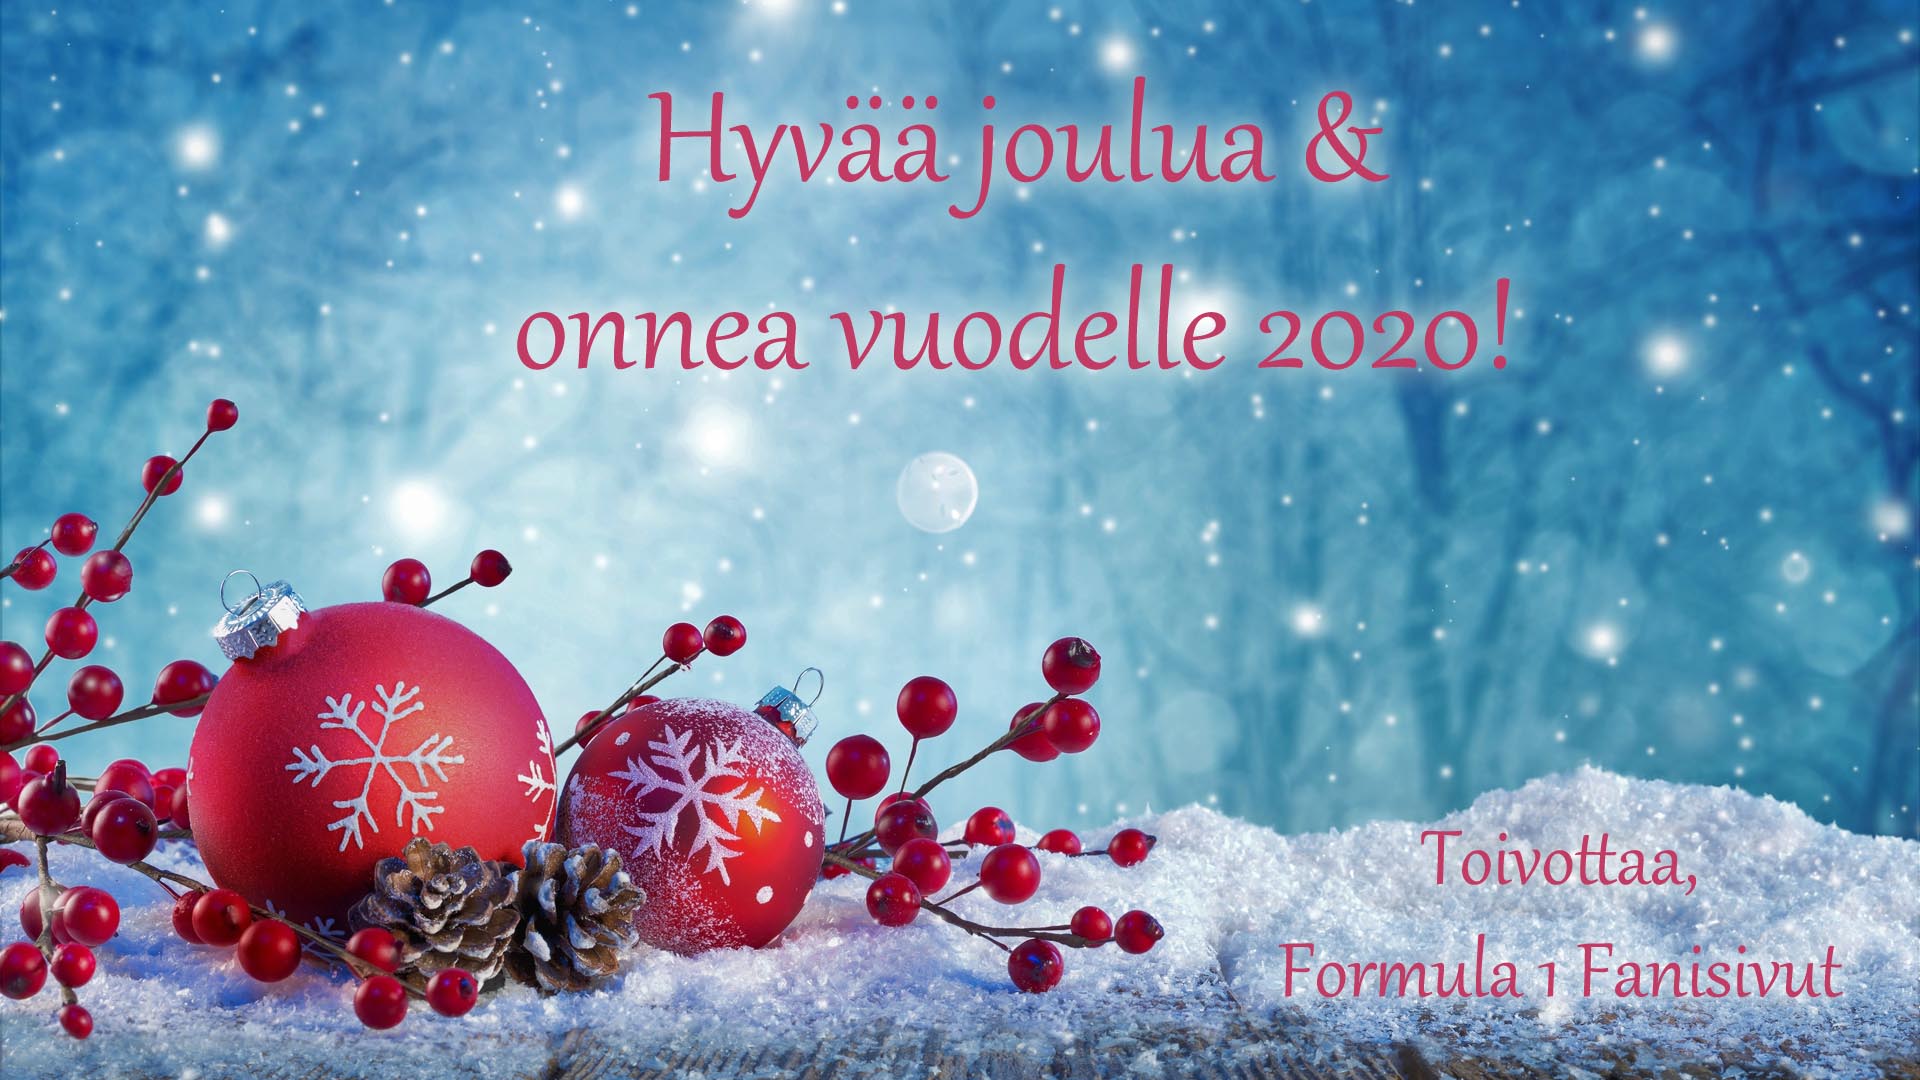 Hyvää joulua ja onnea vuodelle 2020!  Kuva: © 2019 Pixabay.com.